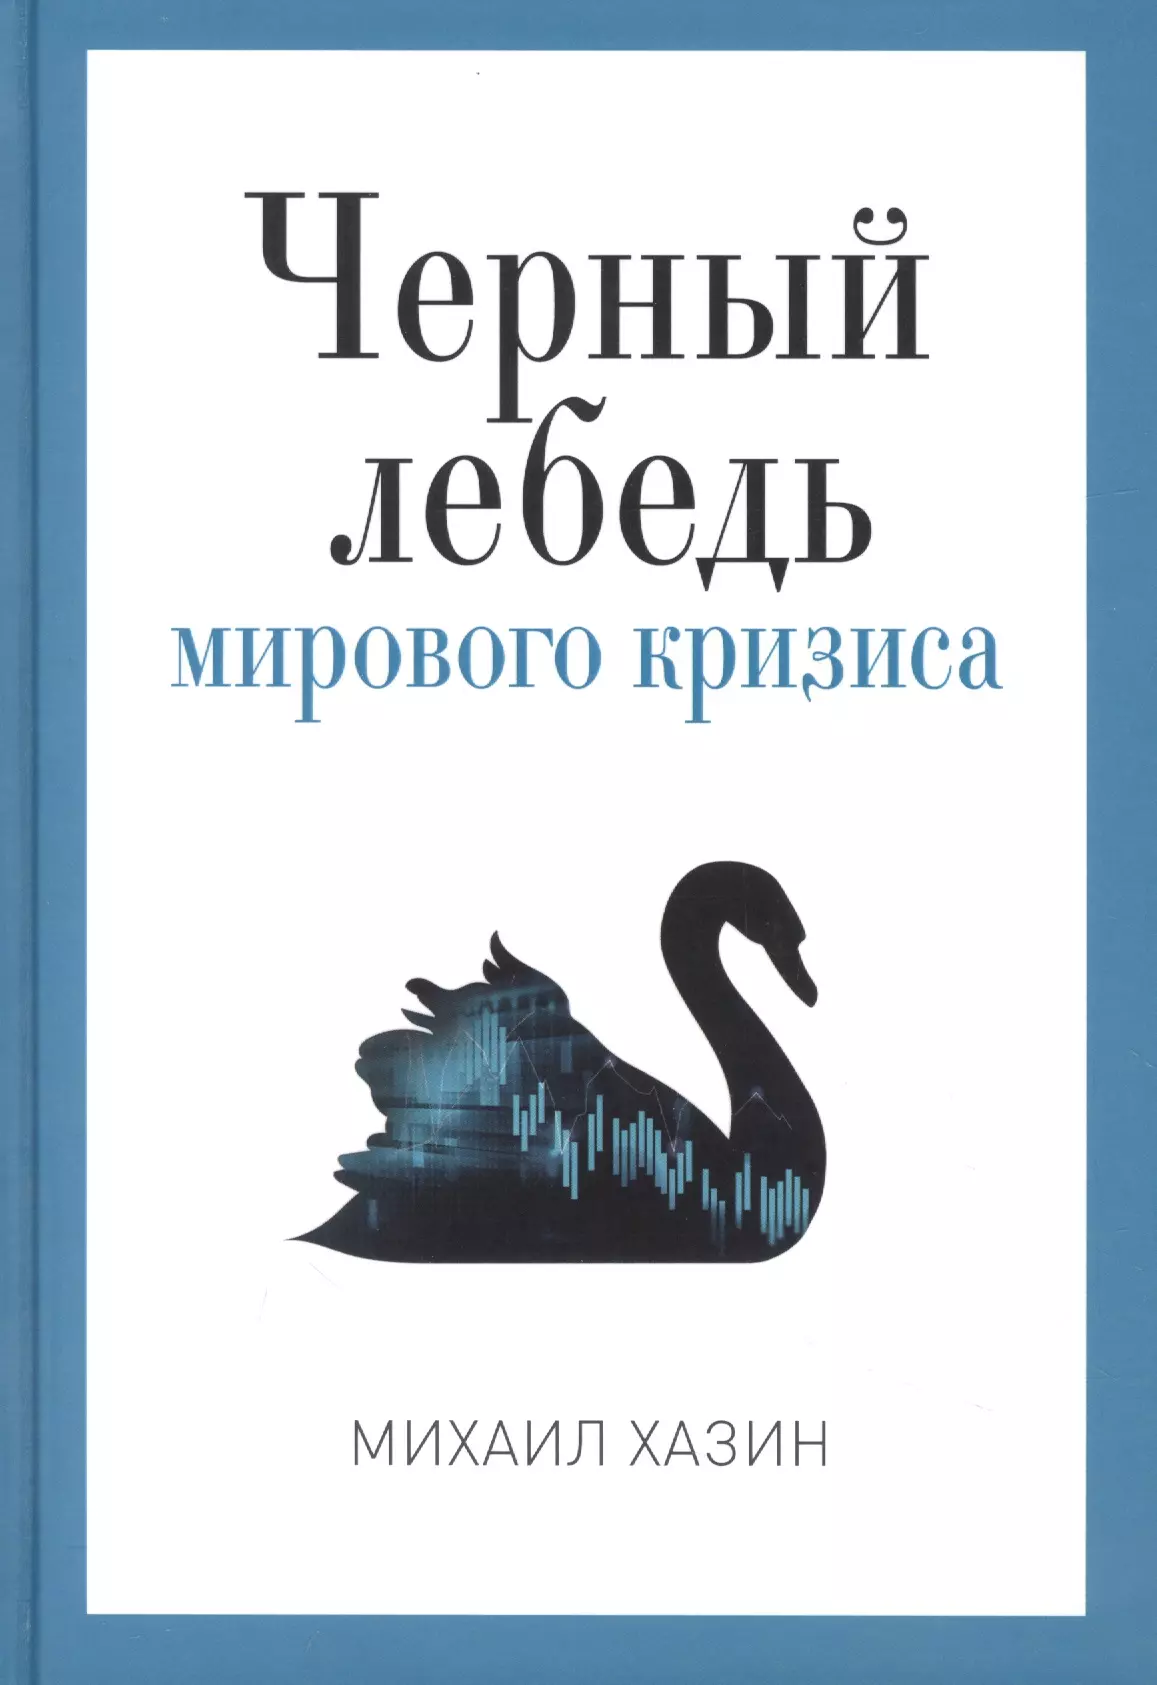 Хазин Михаил Леонидович - Черный лебедь мирового кризиса